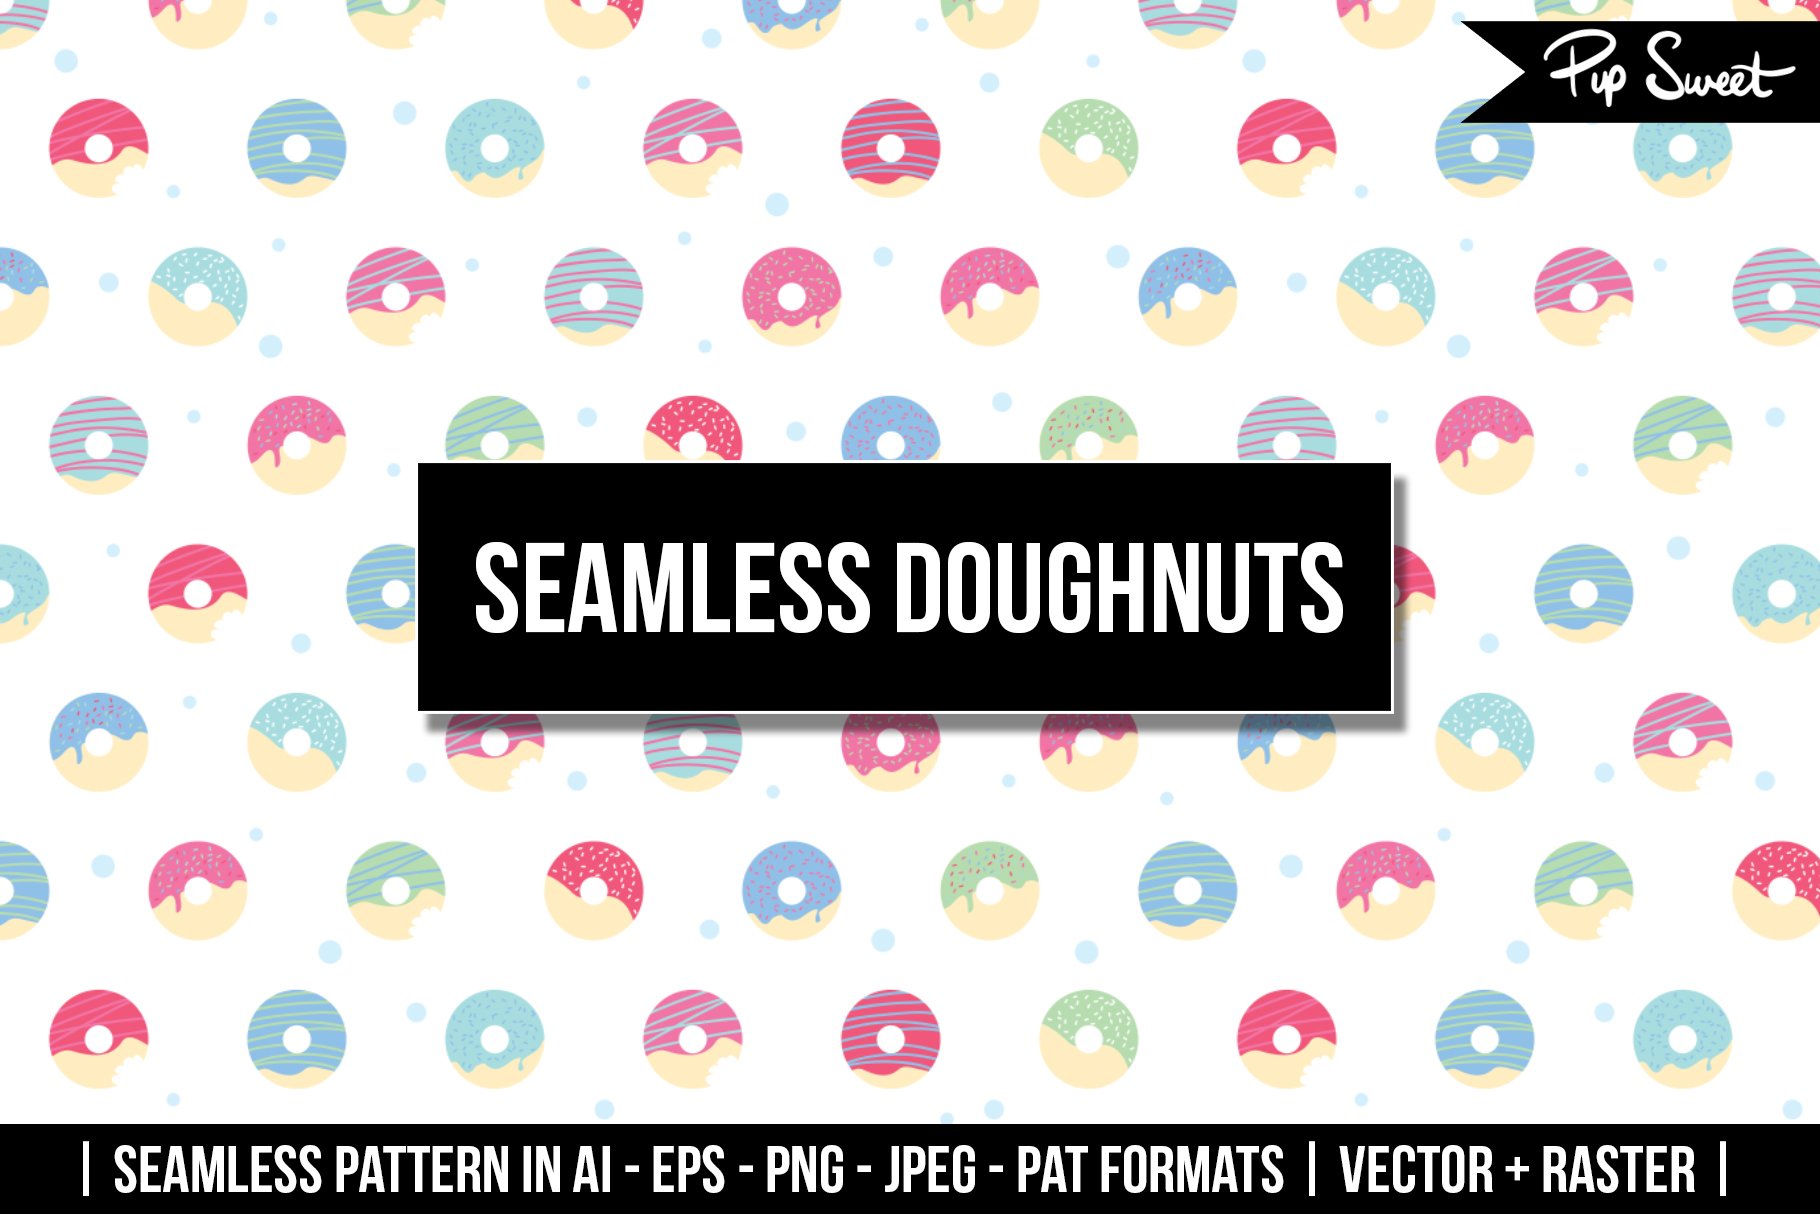 Seamless Doughnuts Vector cover image.